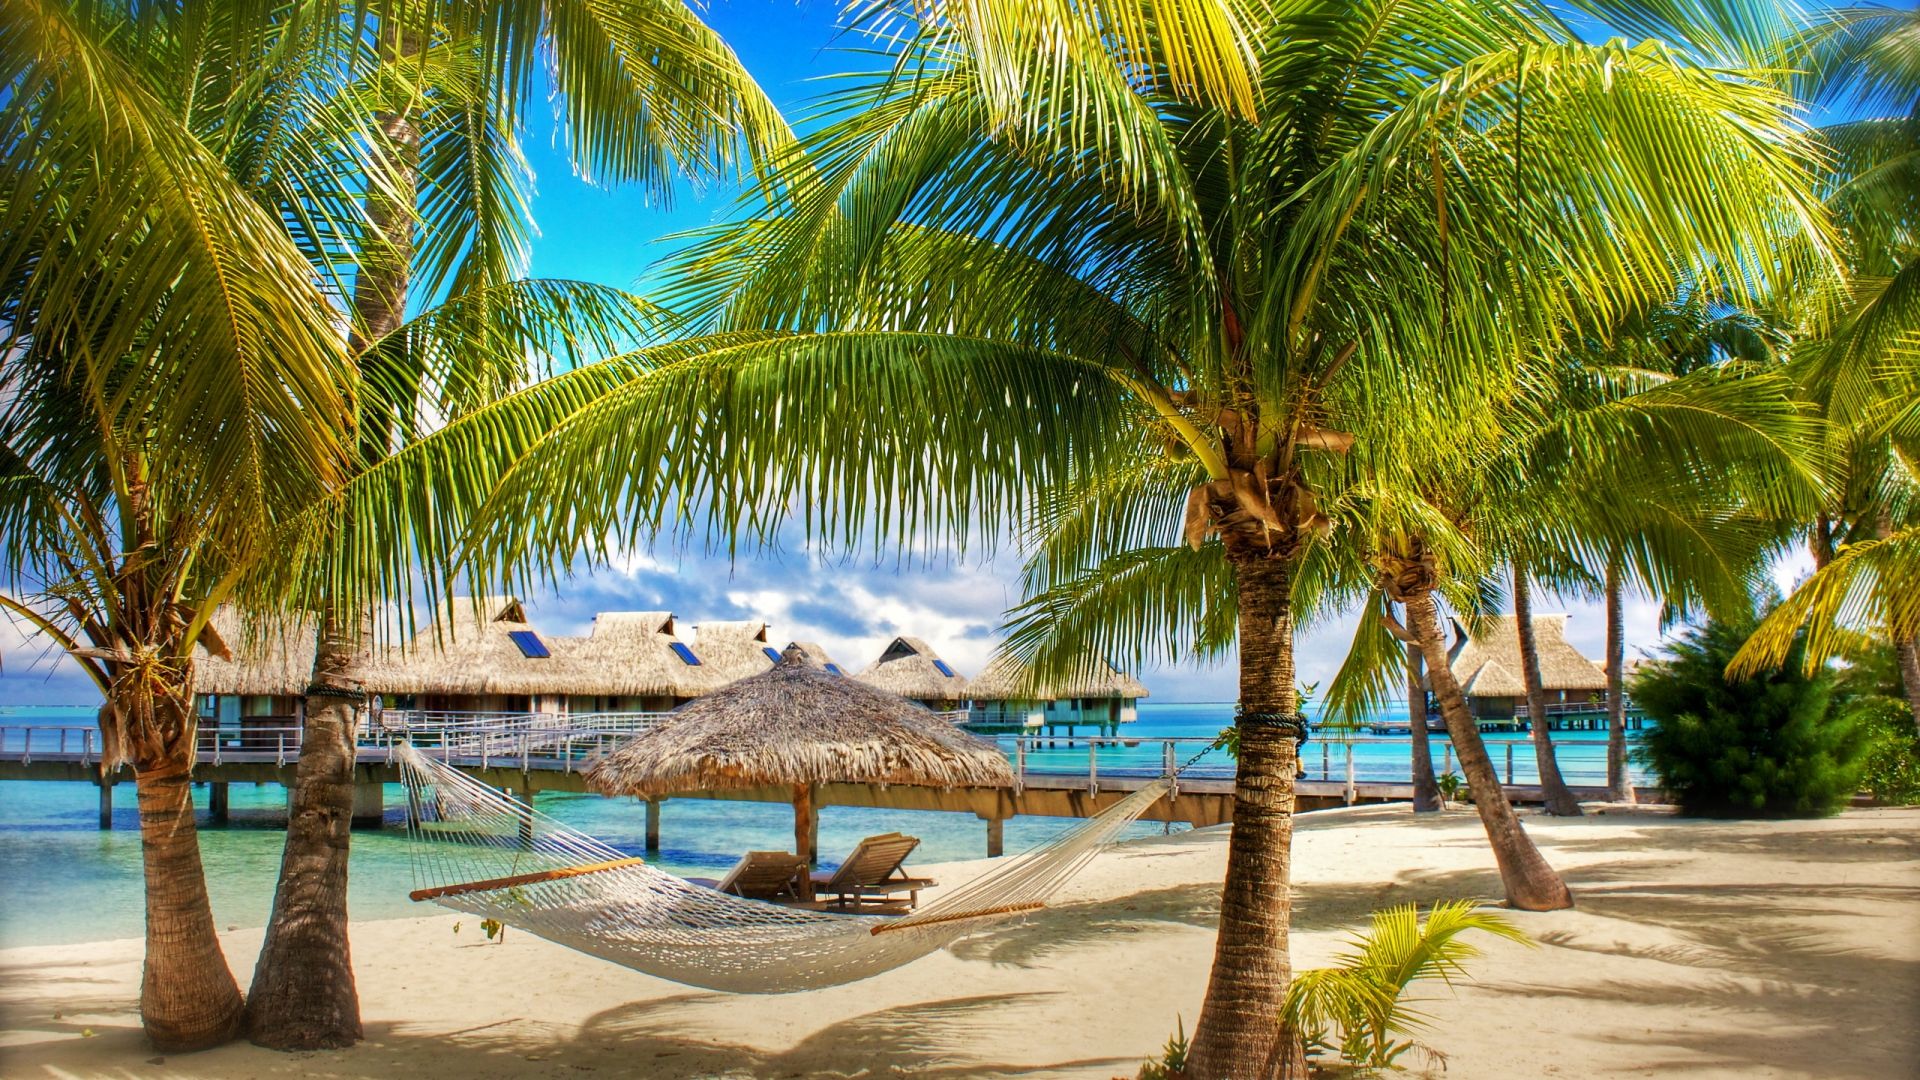 albero di cocco wallpaper hd,albero,palma,vacanza,caraibico,paesaggio naturale